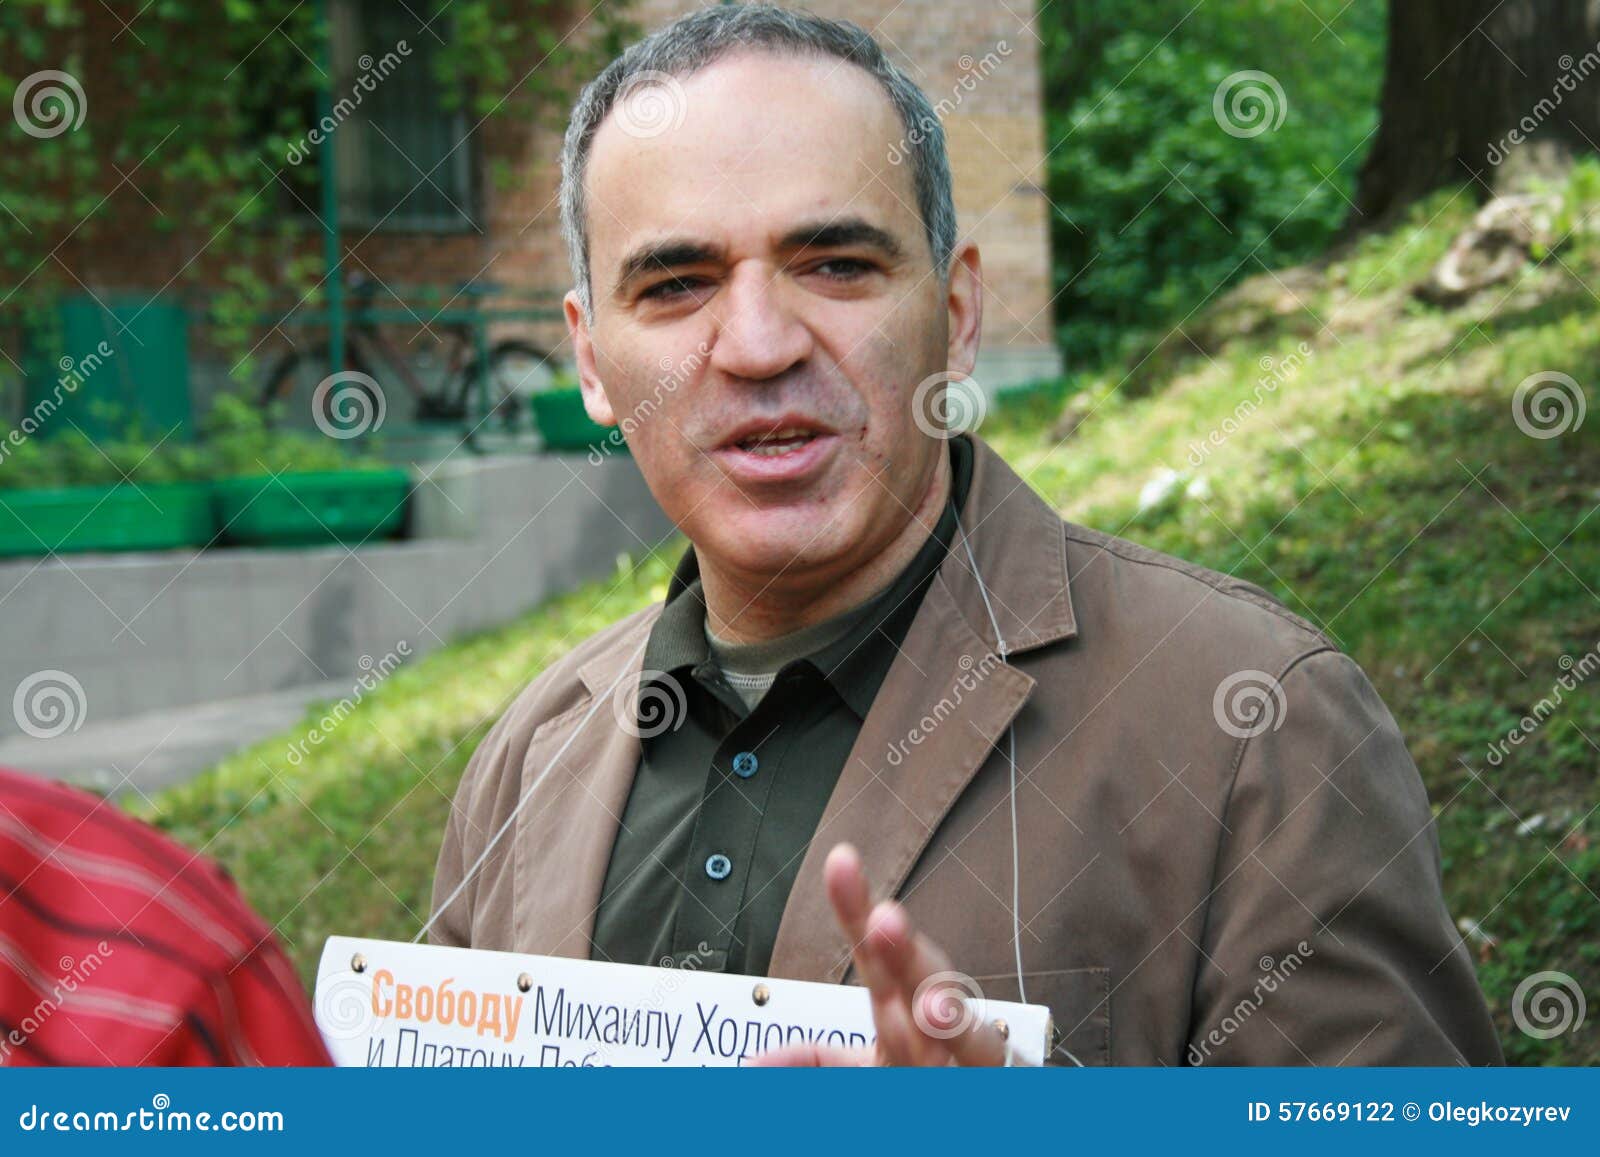 Chess Champion Garry Kasparov